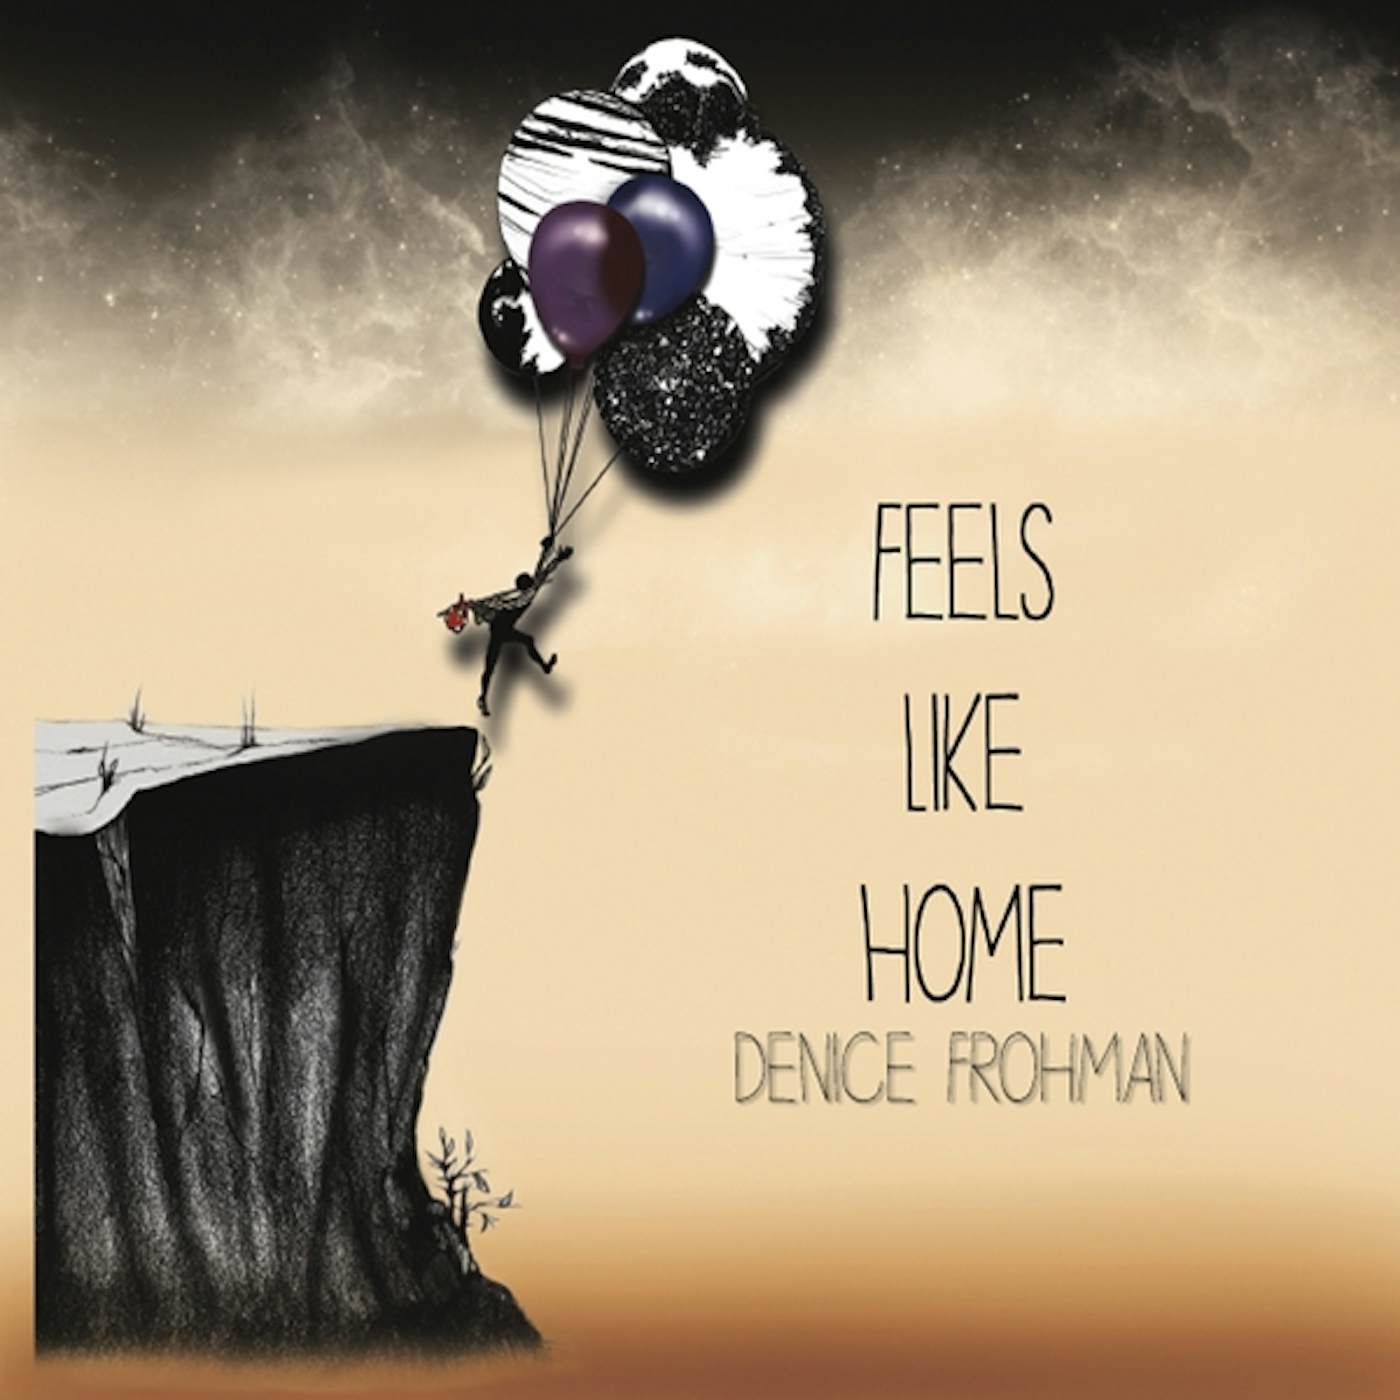 Denice Frohman FEELS LIKE HOME CD